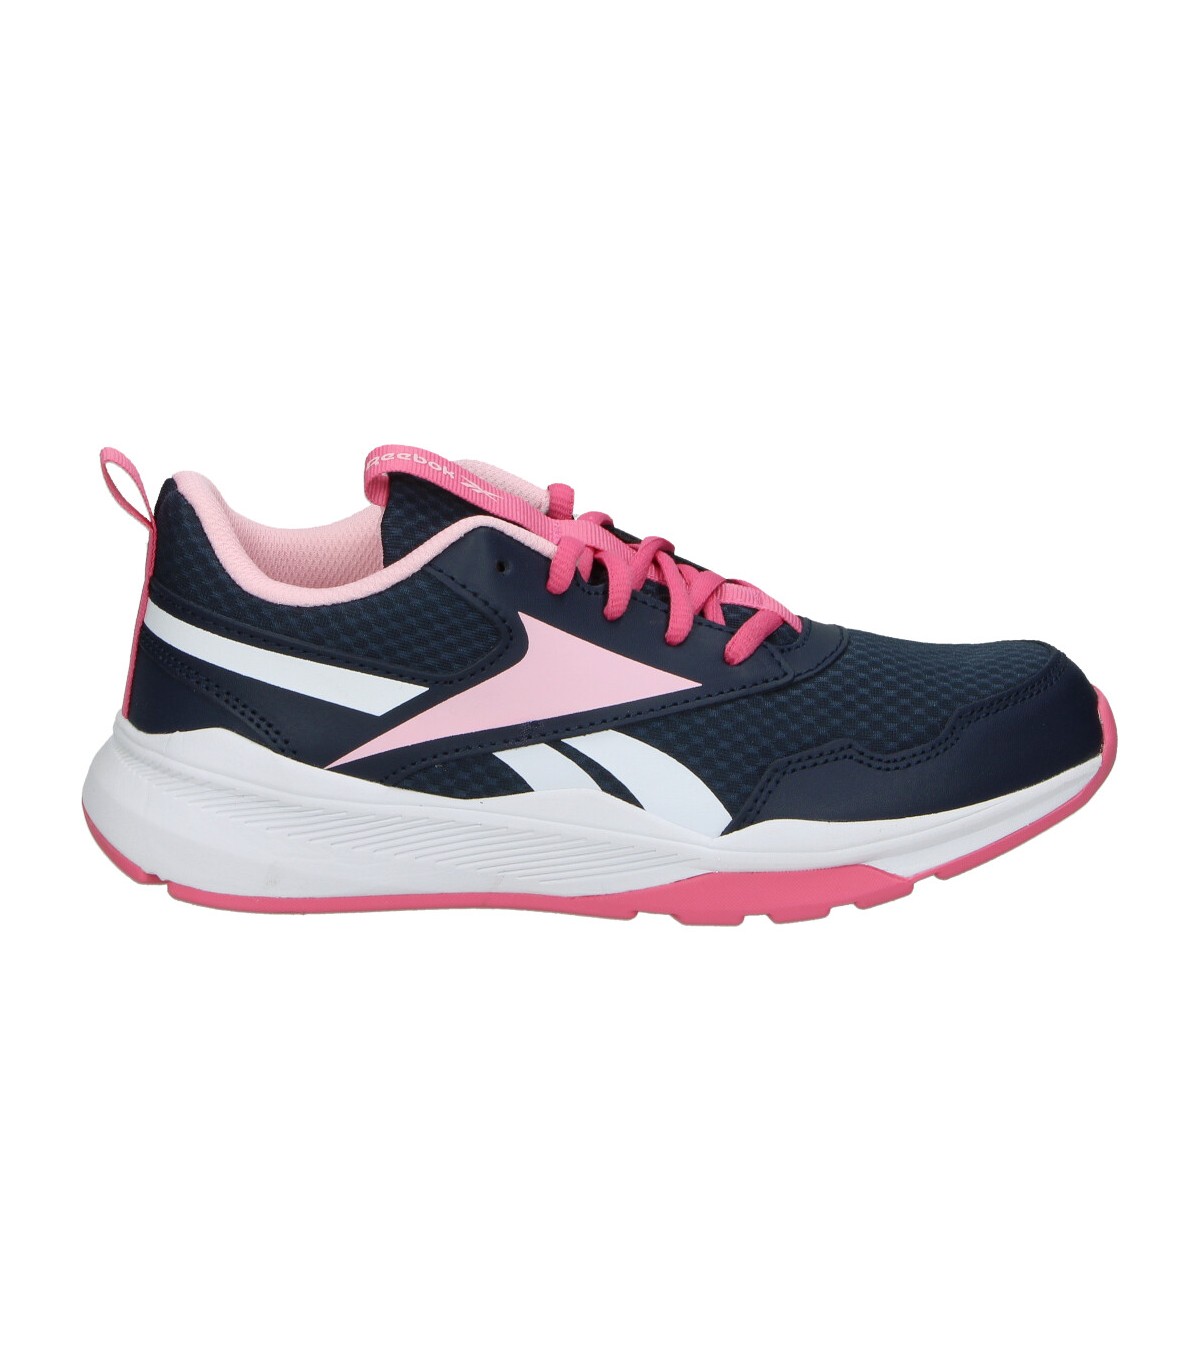 Completo maratón Reanimar Zapatillas negras y rosas para mujer Reebok XT Sprinter 2